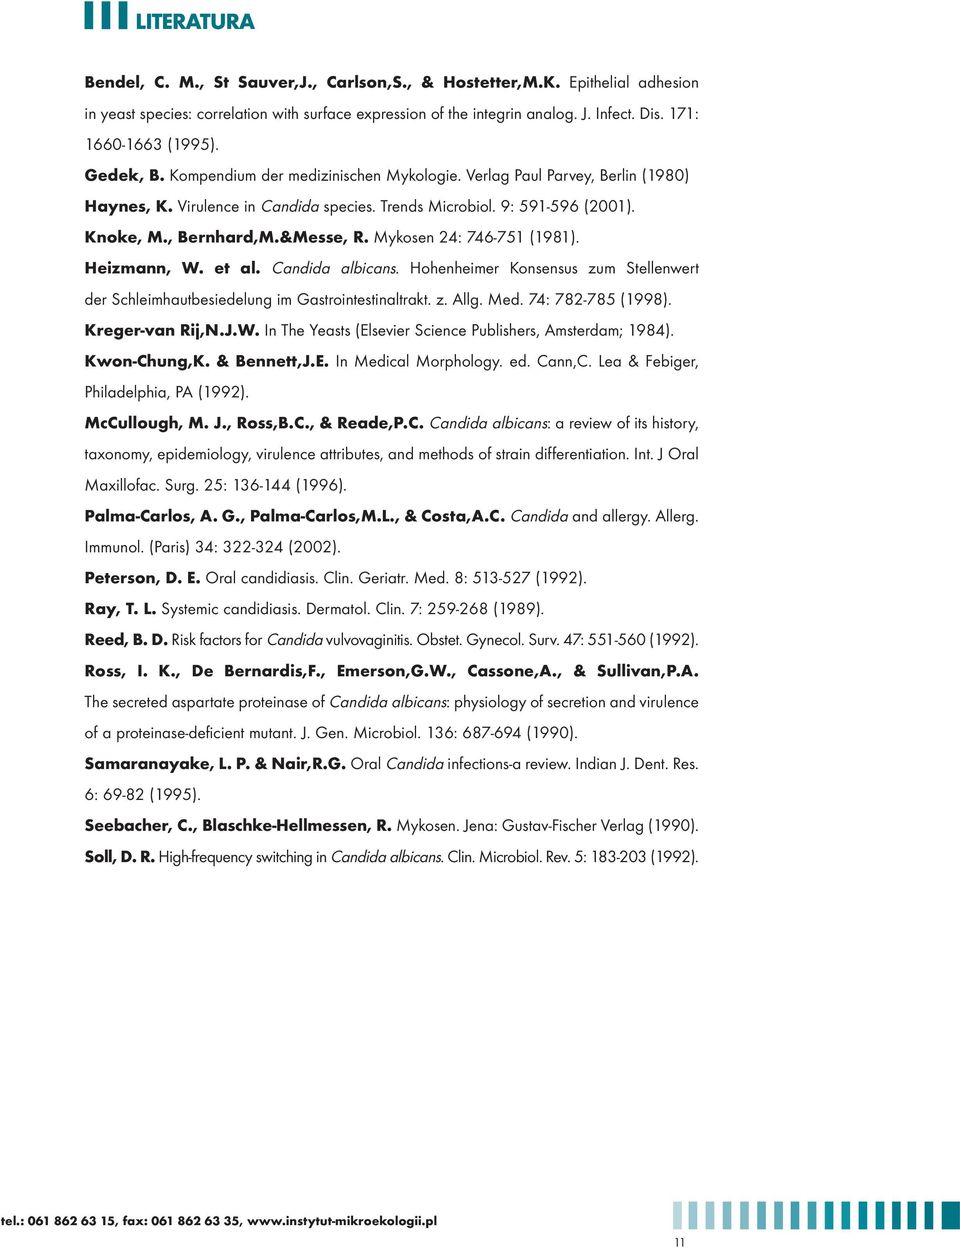 , Bernhard,M.&Messe, R. Mykosen 24: 746-751 (1981). Heizmann, W. et al. Candida albicans. Hohenheimer Konsensus zum Stellenwert der Schleimhautbesiedelung im Gastrointestinaltrakt. z. Allg. Med.